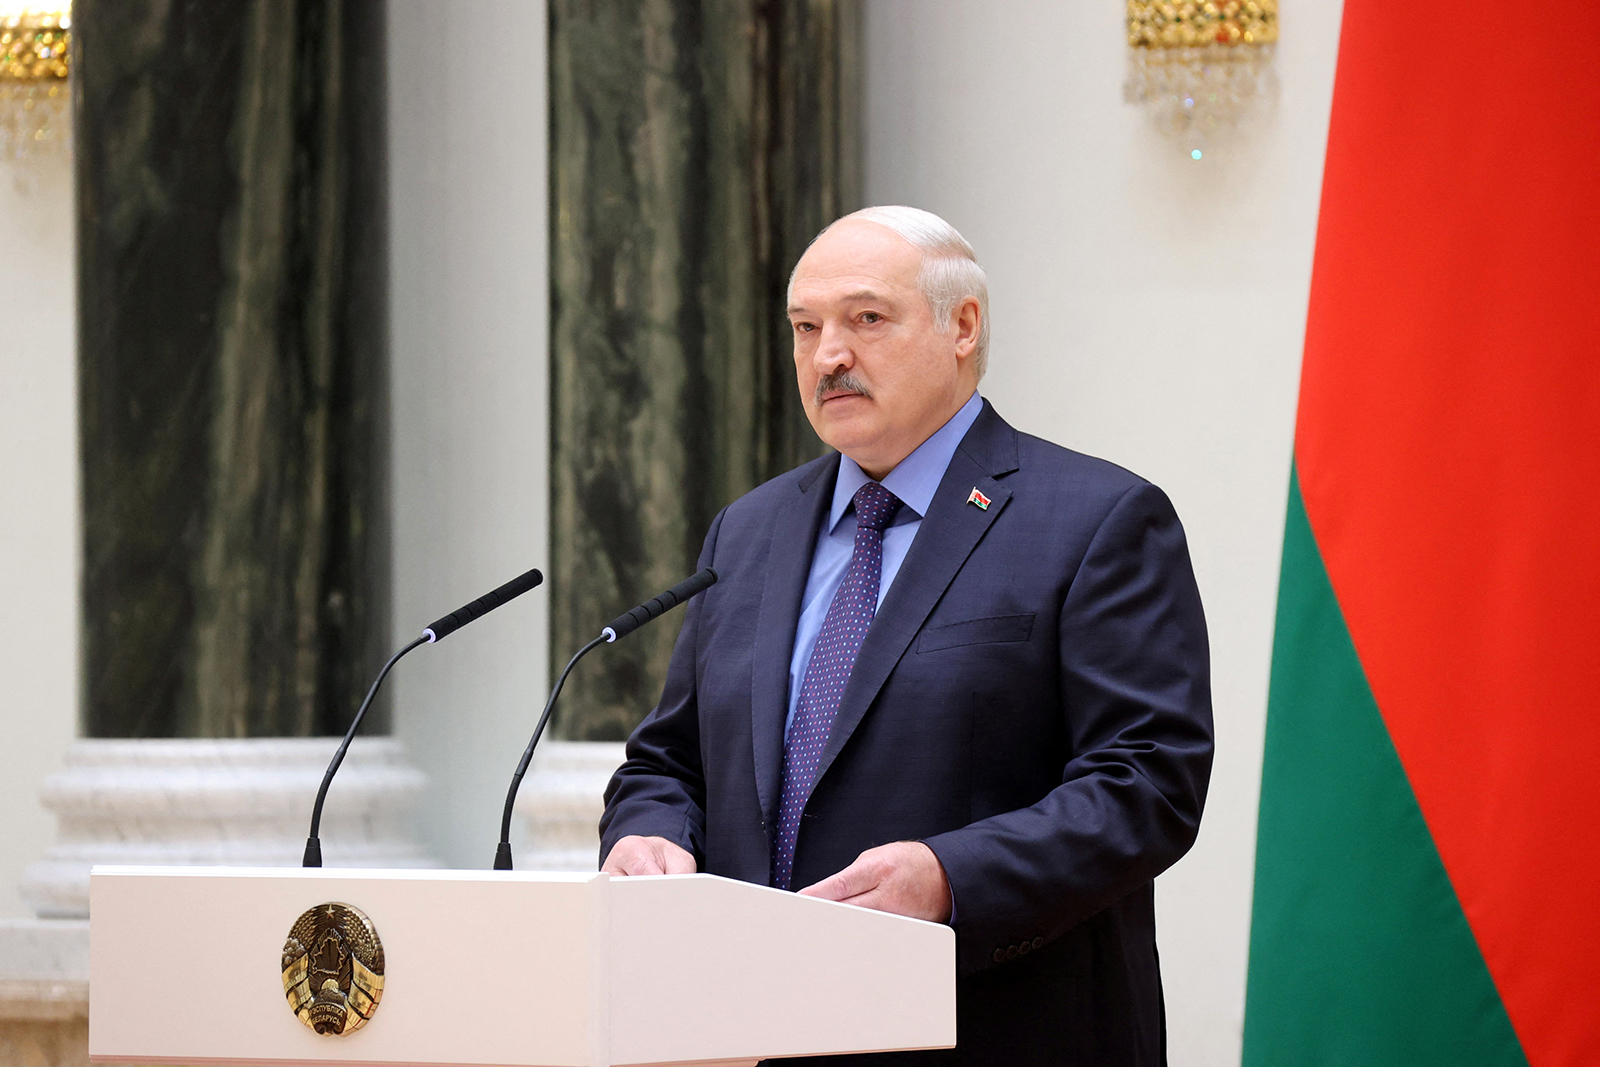 Alexander Lukashenko delivers a speech in Minsk, Belarus, on June 27.